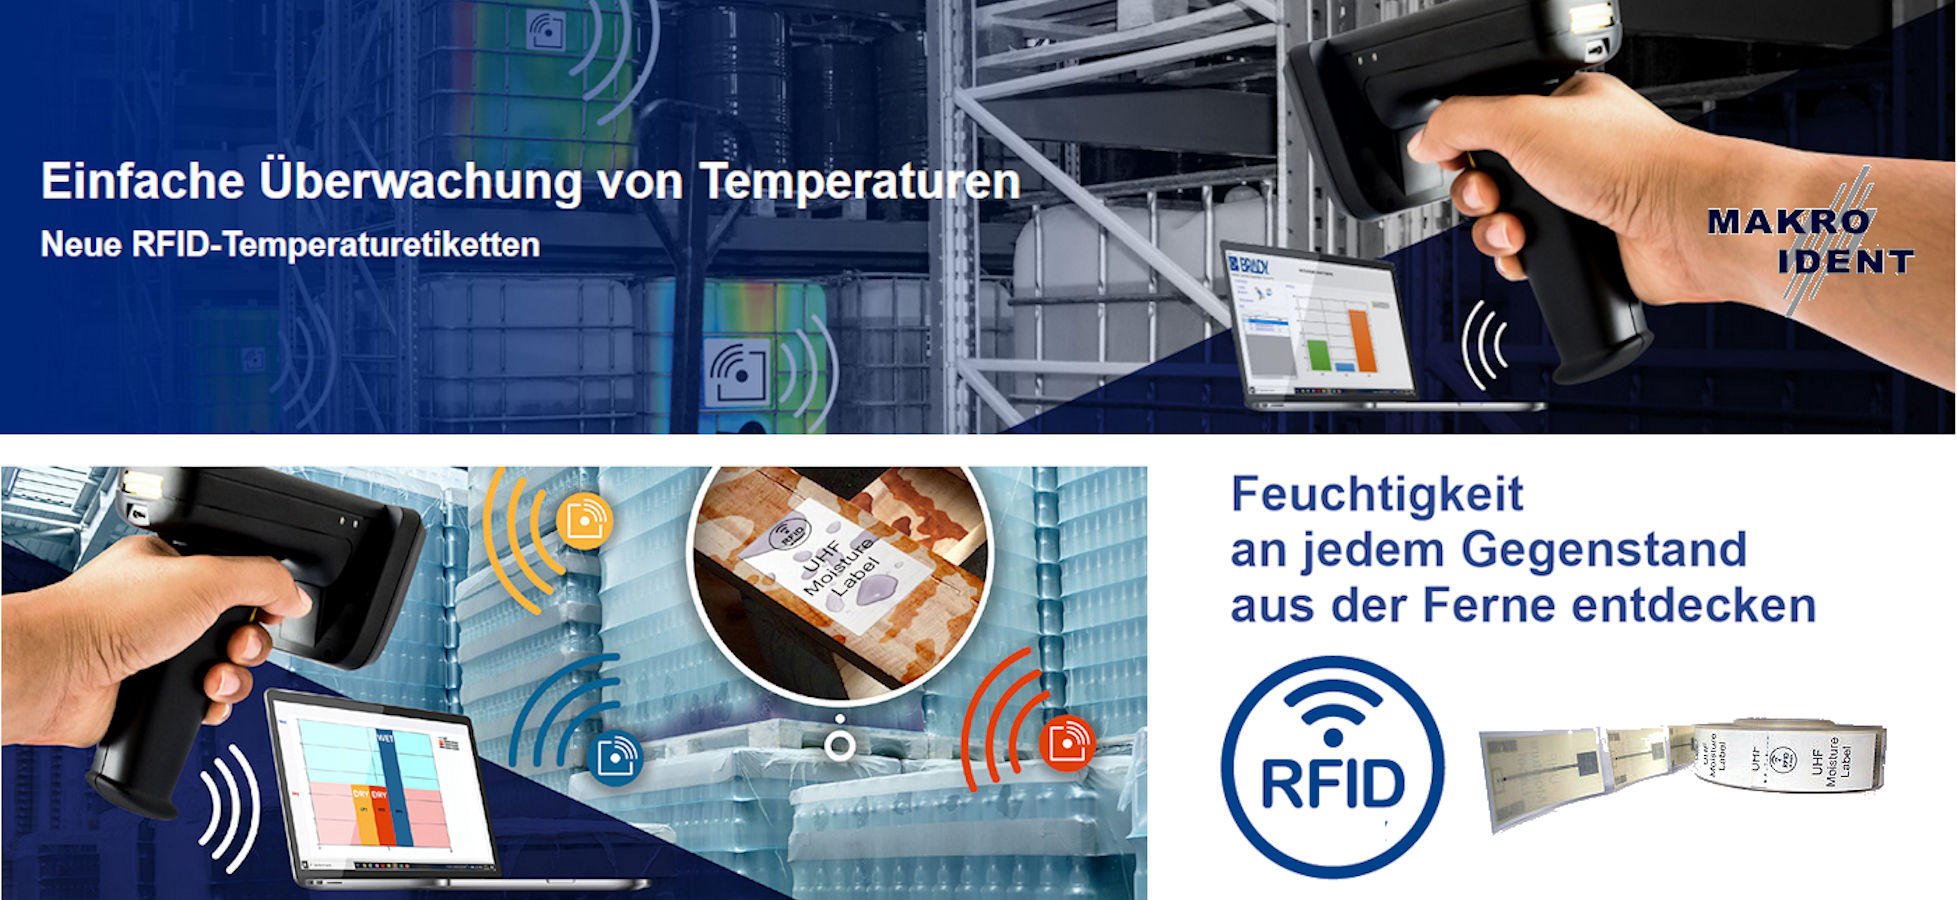 rfid-etiketten-temp-feucht RFID-Etiketten mit Sensor für die Temperatur-  und Feuchtigkeitserkennung